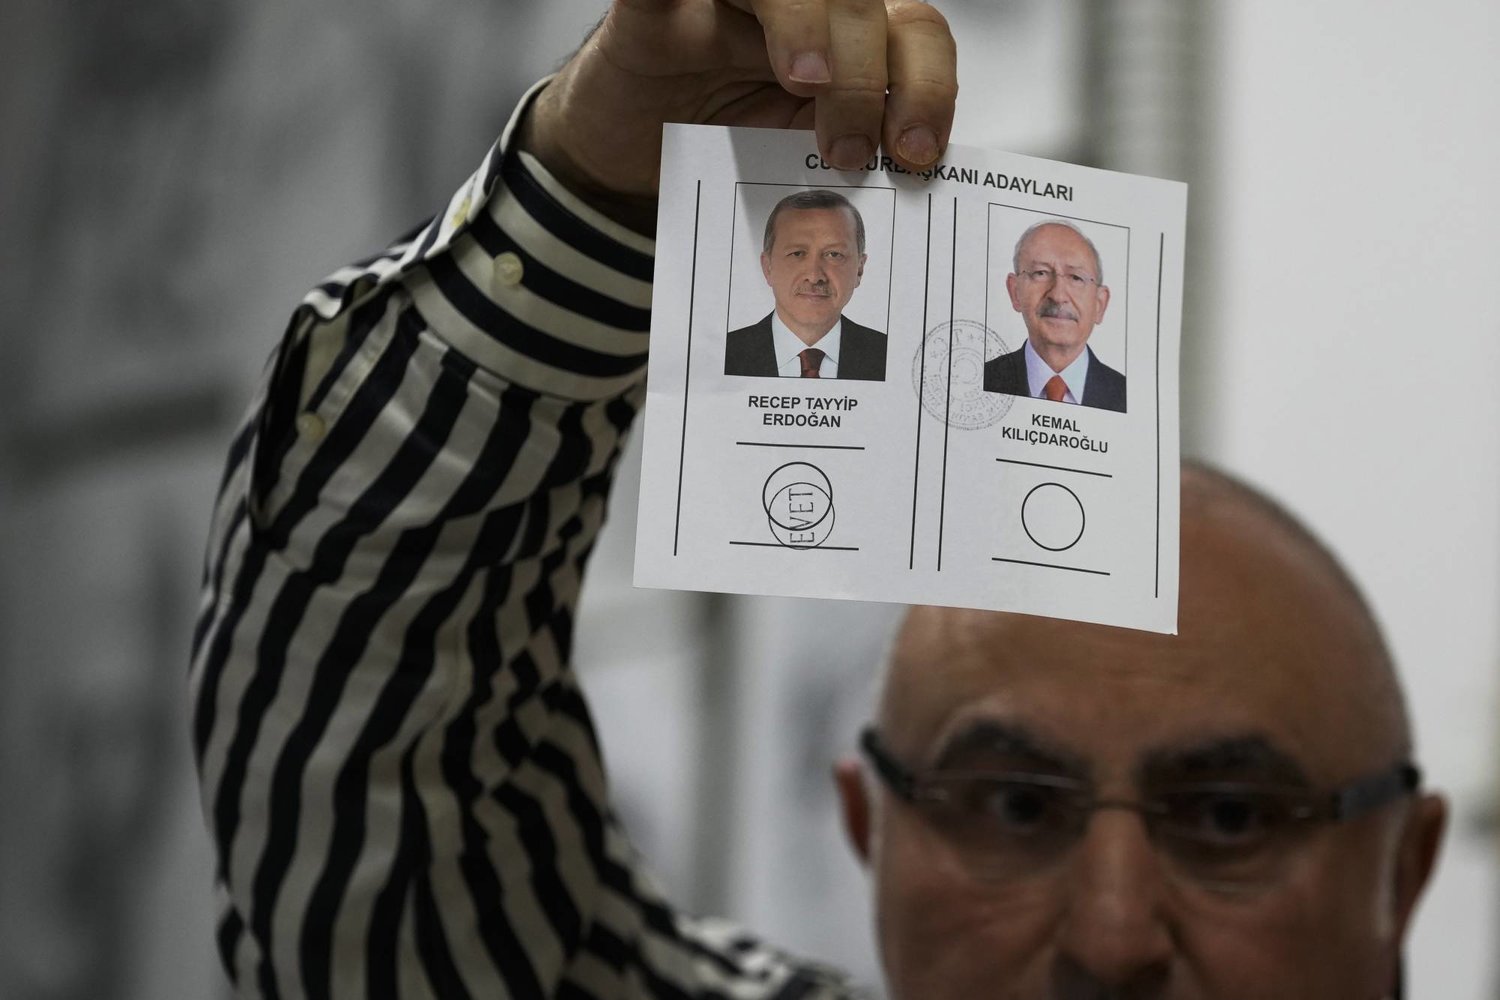 مندوب يعرض ورقة تصويت لمصلحة إردوغان في مركز اقتراع بإسطنبول الاثنين (أ.ب)